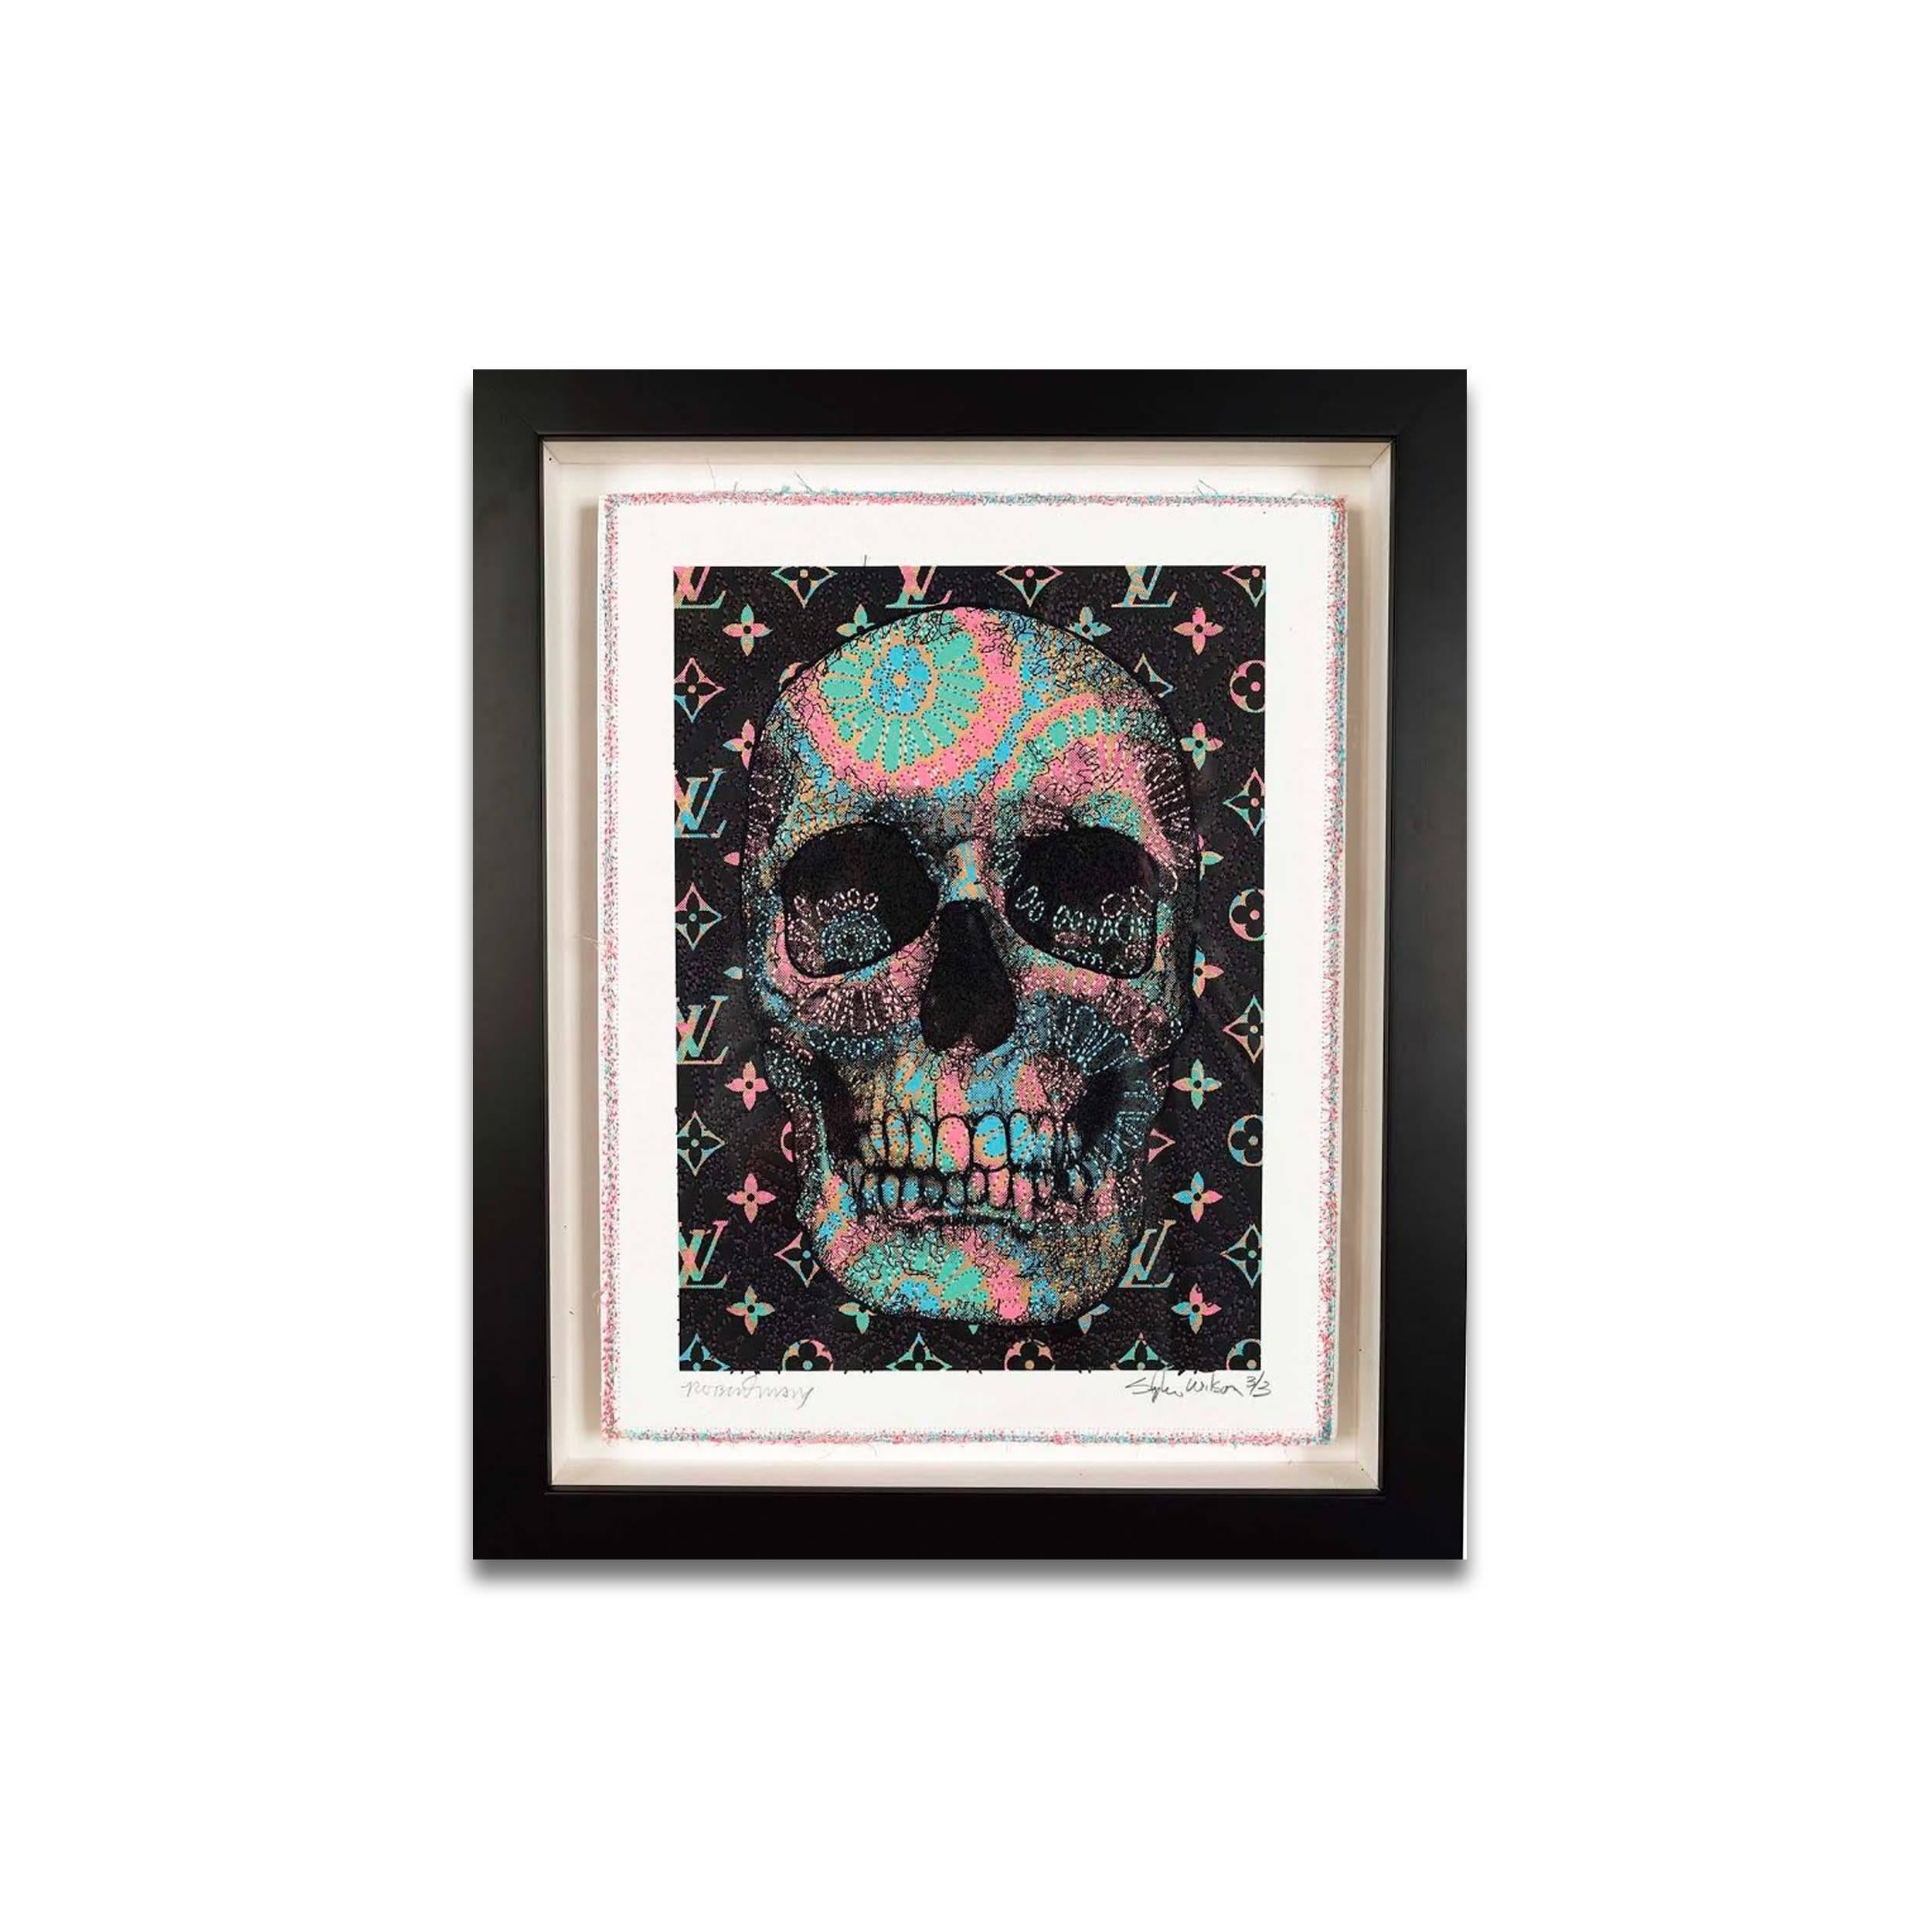 Robert Mars/Stephen Wilson Skulls Collaboration 3 est une œuvre figurative abstraite contemporaine rose, turquoise et noire en techniques mixtes qui mesure 12 x 9 et dont le prix est de 2 100 dollars.


Né et élevé à Hoboken, dans le New Jersey,